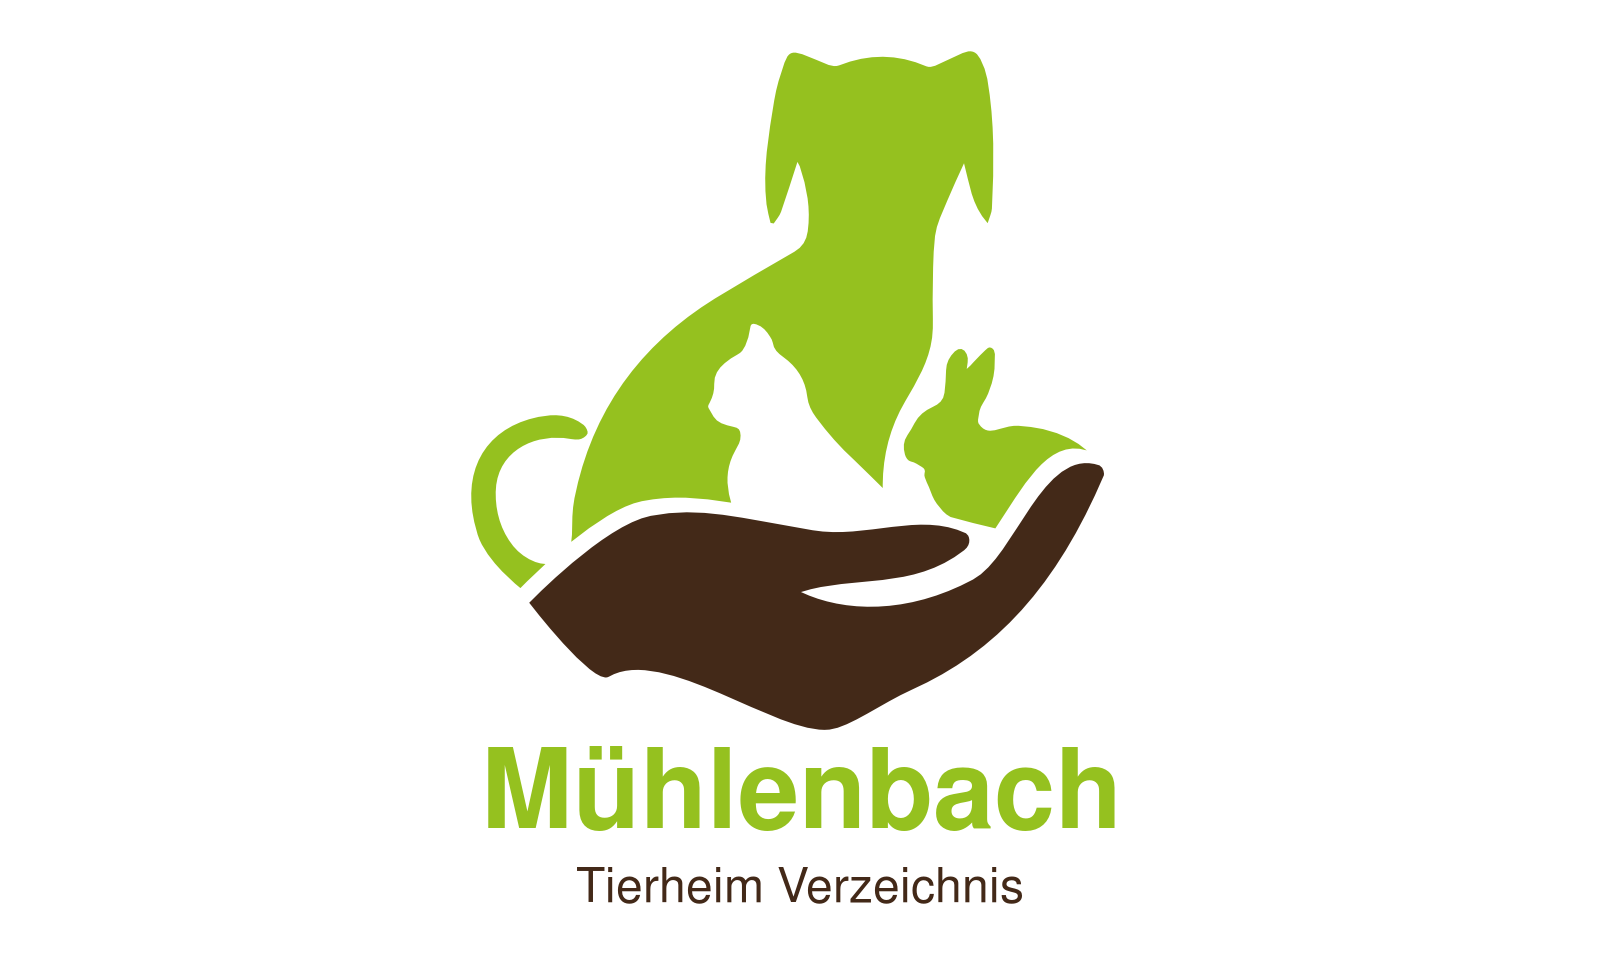 Tierheim Mühlenbach